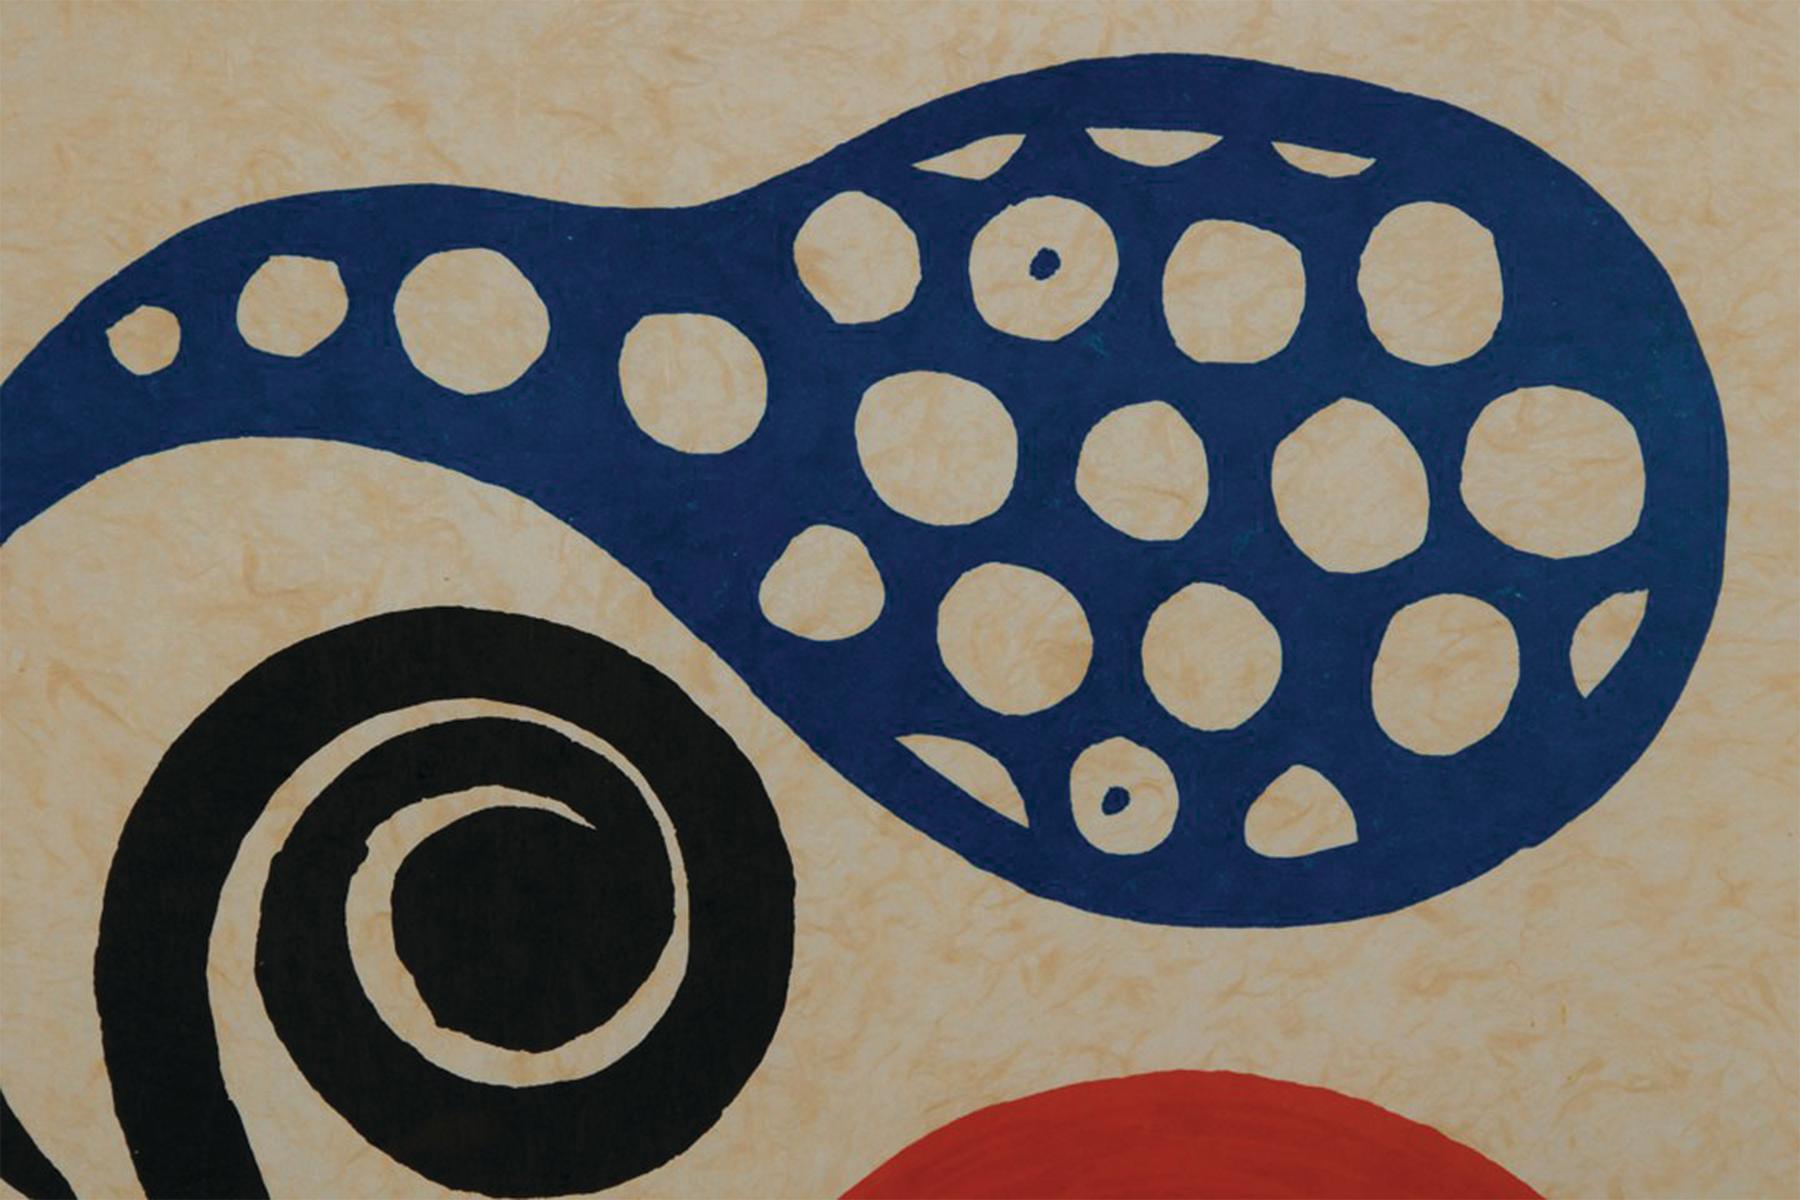 Alexander Calder (Américain, 1898-1976)
Fiesta, c. 1973
Lithographie en couleurs
Signé en bas à droite
Édition : E. A.
20 x 28 pouces
35.5 x 37.75 pouces, encadré

L'un des sculpteurs américains les plus connus, 